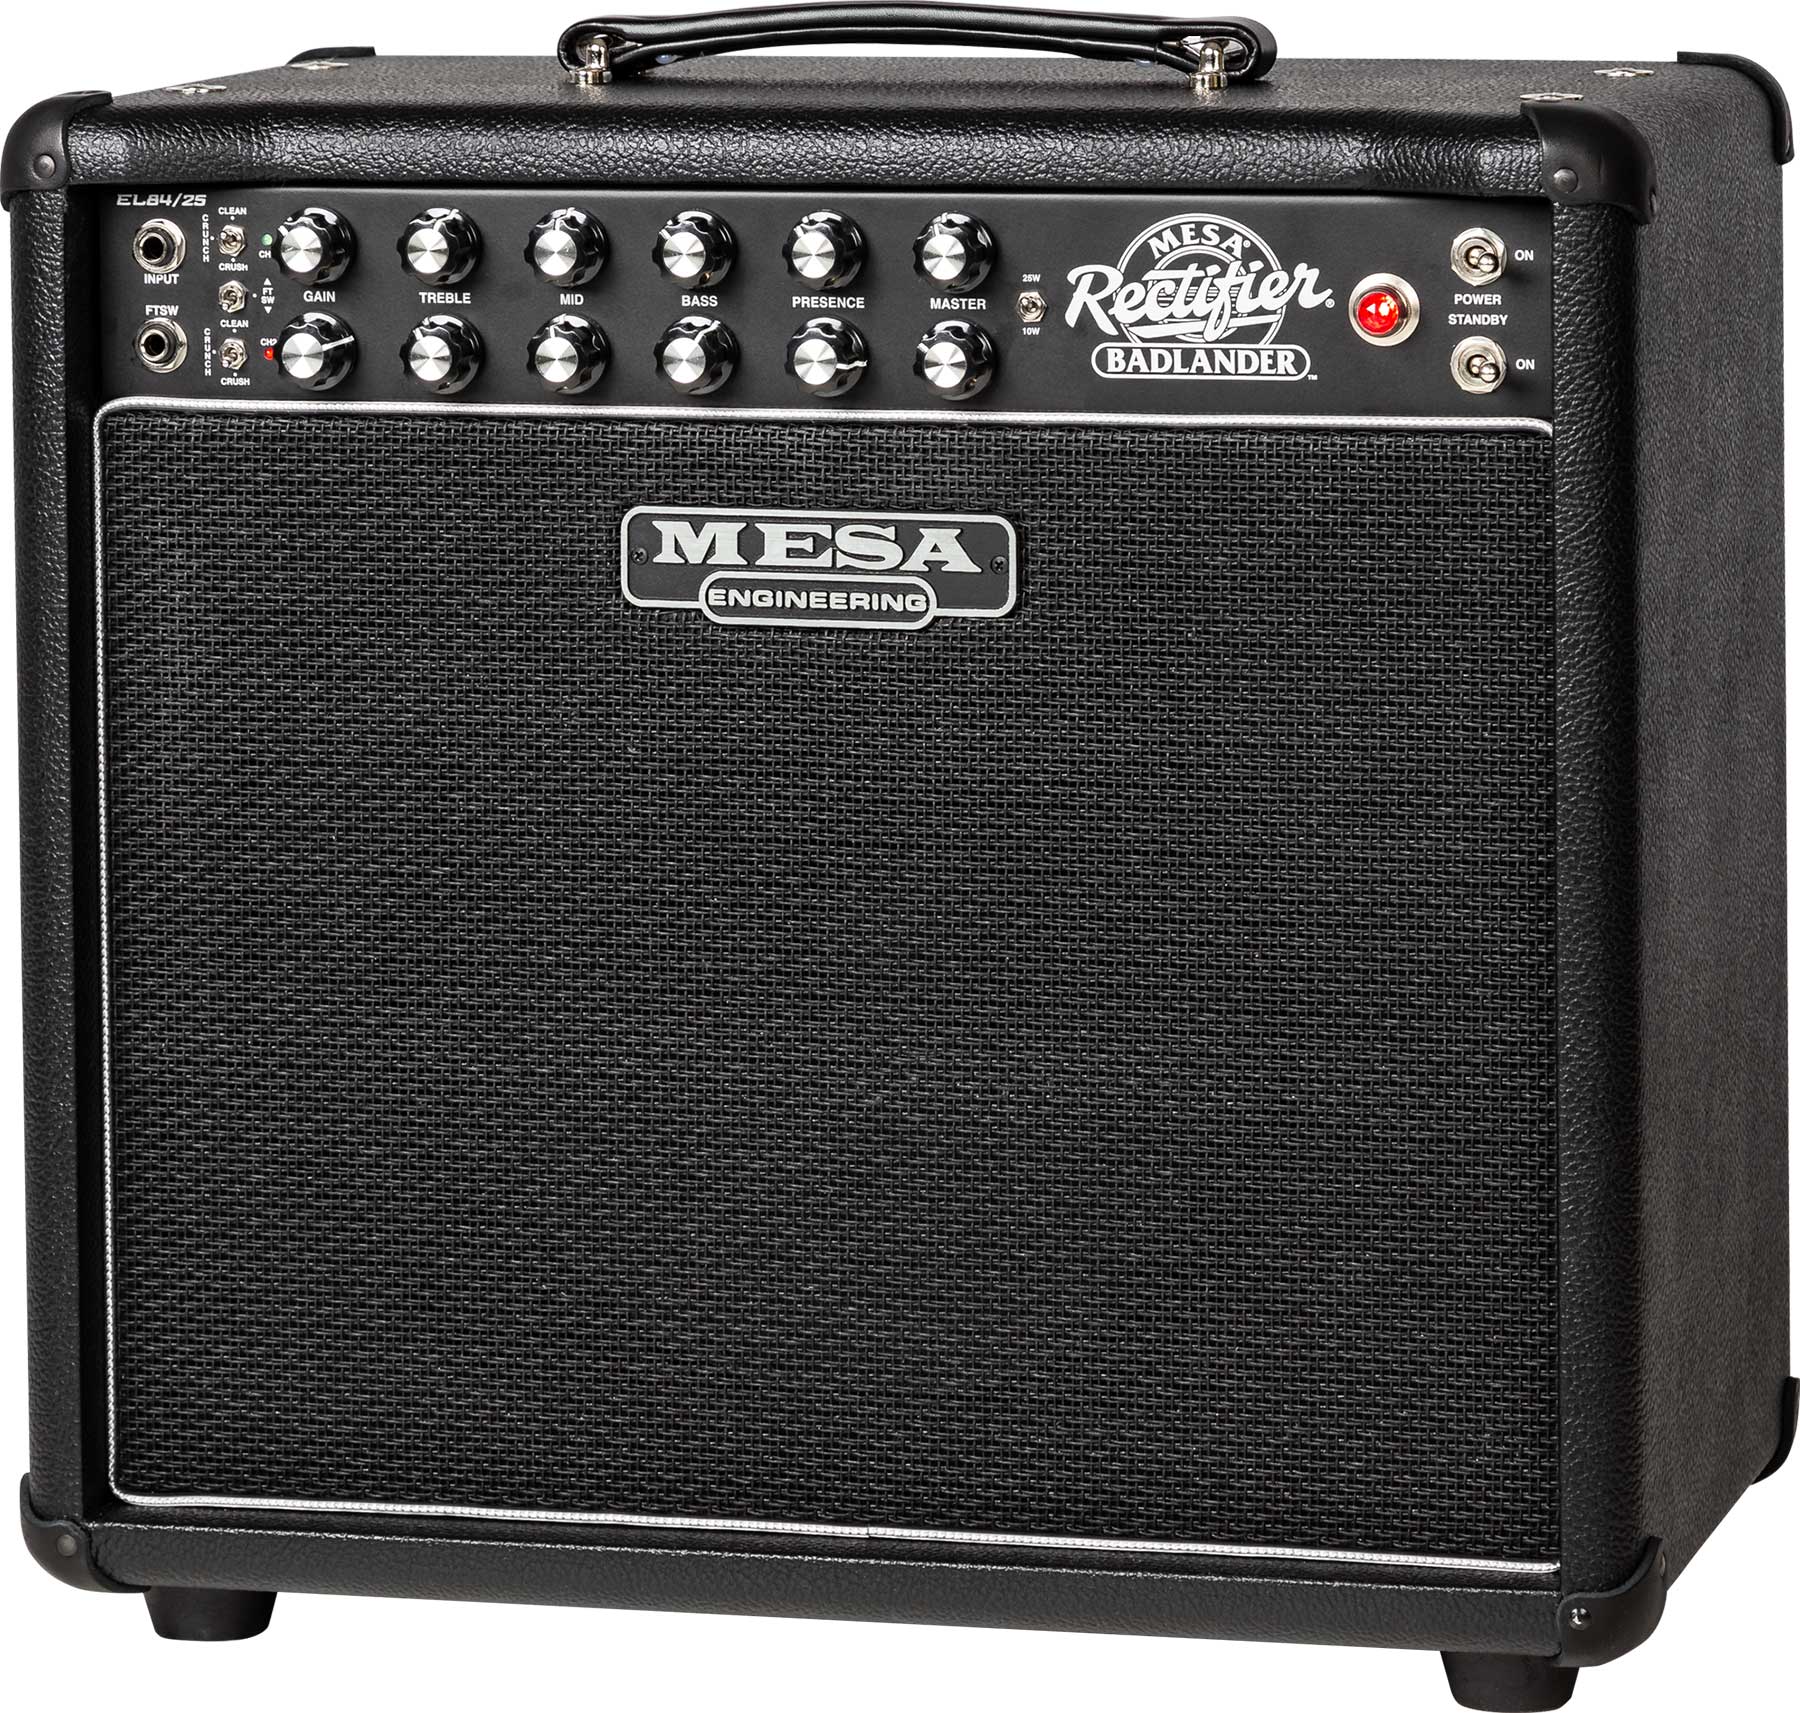 Mesa Boogie Badlander 25 1x12 Combo 10/25w 112 El84 Black Bronco - Combo voor elektrische gitaar - Variation 1